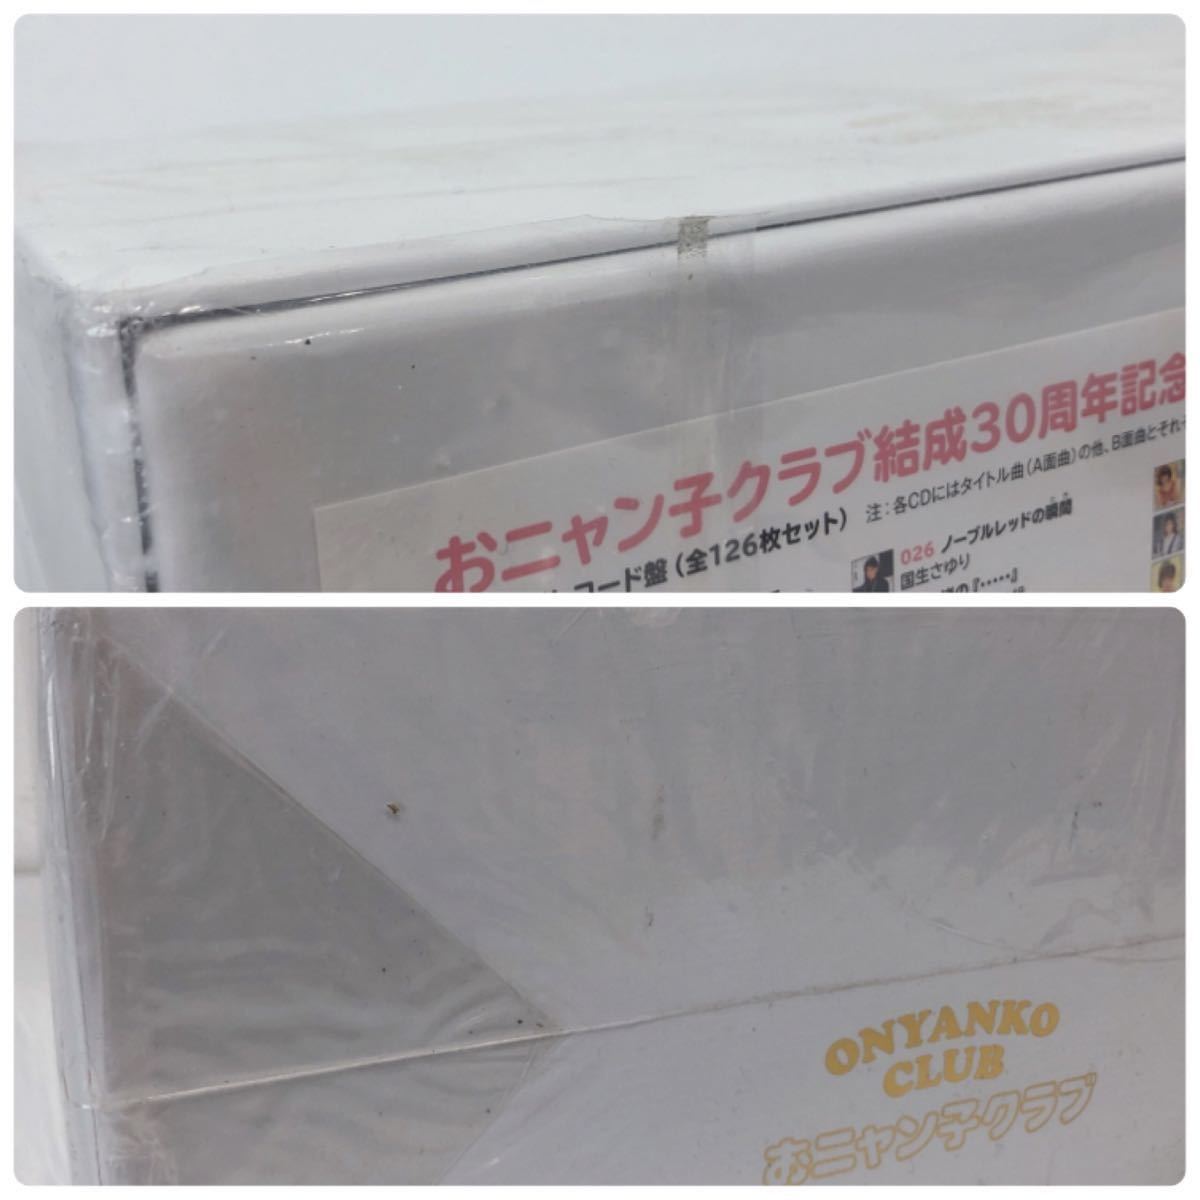 高級ブランド 専用「おニャン子クラブCD-BOX「シングルレコード復刻